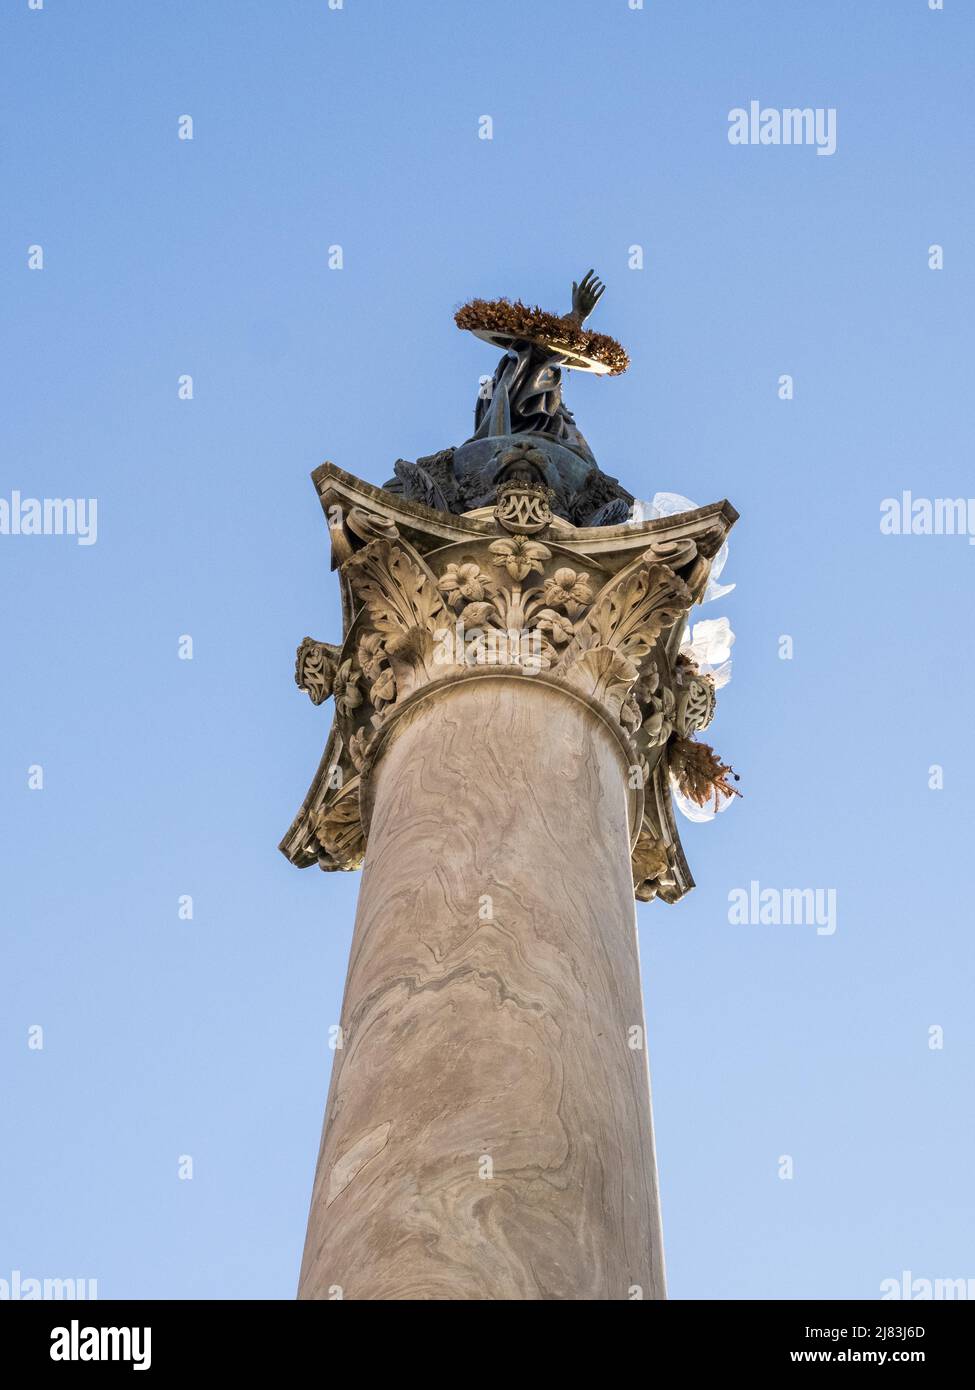 Bronze statue of the Virgin Mary on the Marian Column, Colonna della Vergine, Piazza Santa Maria Maggiore, Rome, Lazio, Italy Stock Photo